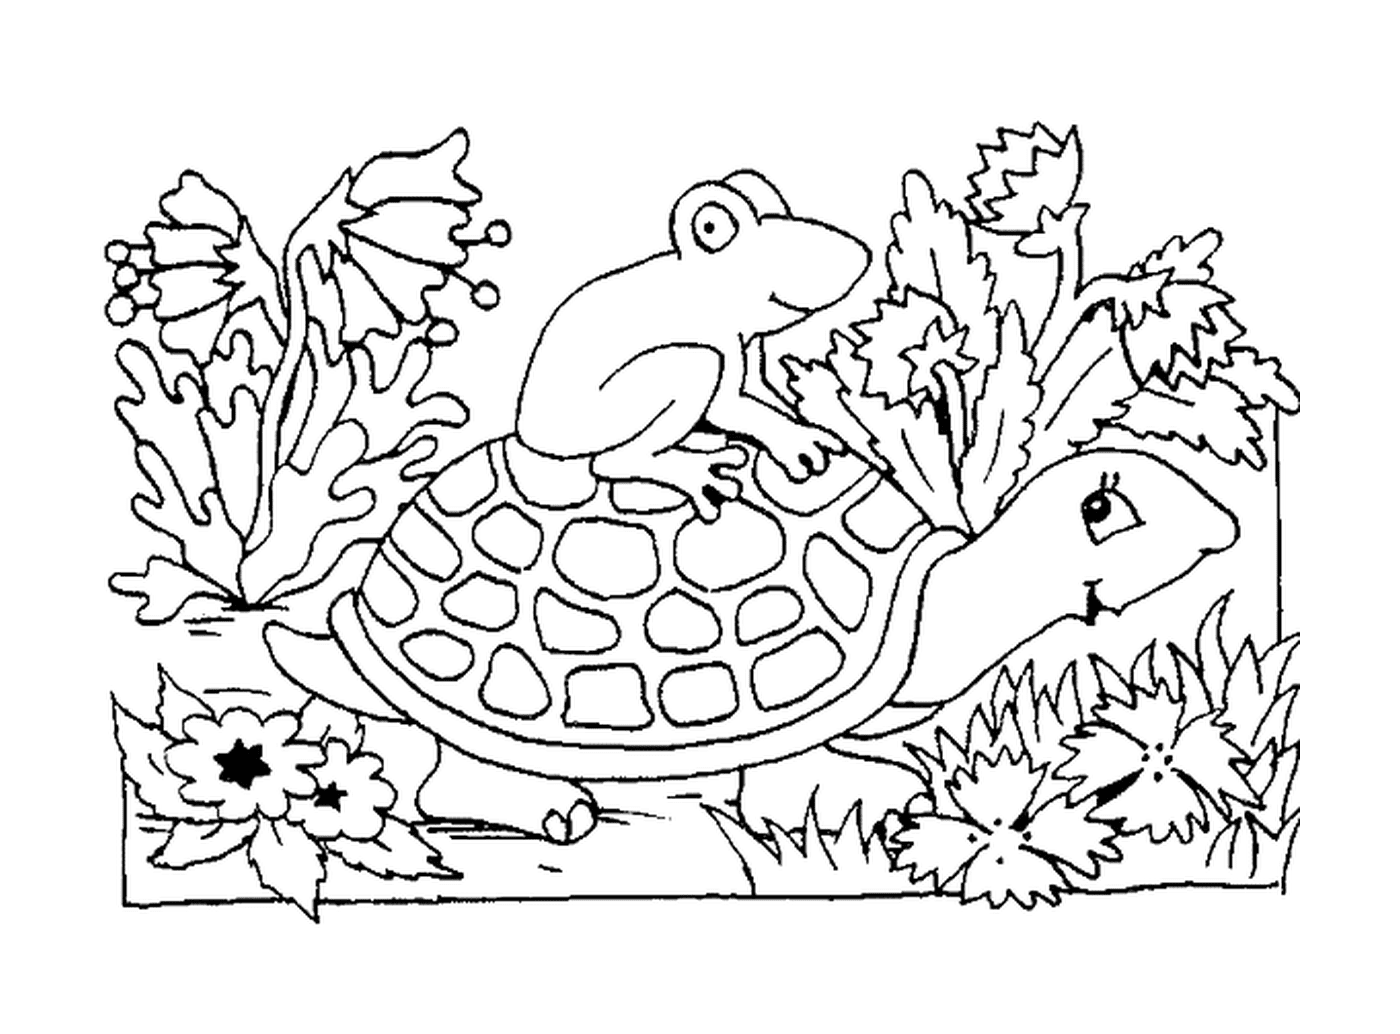   Une grenouille assise sur une carapace de tortue 